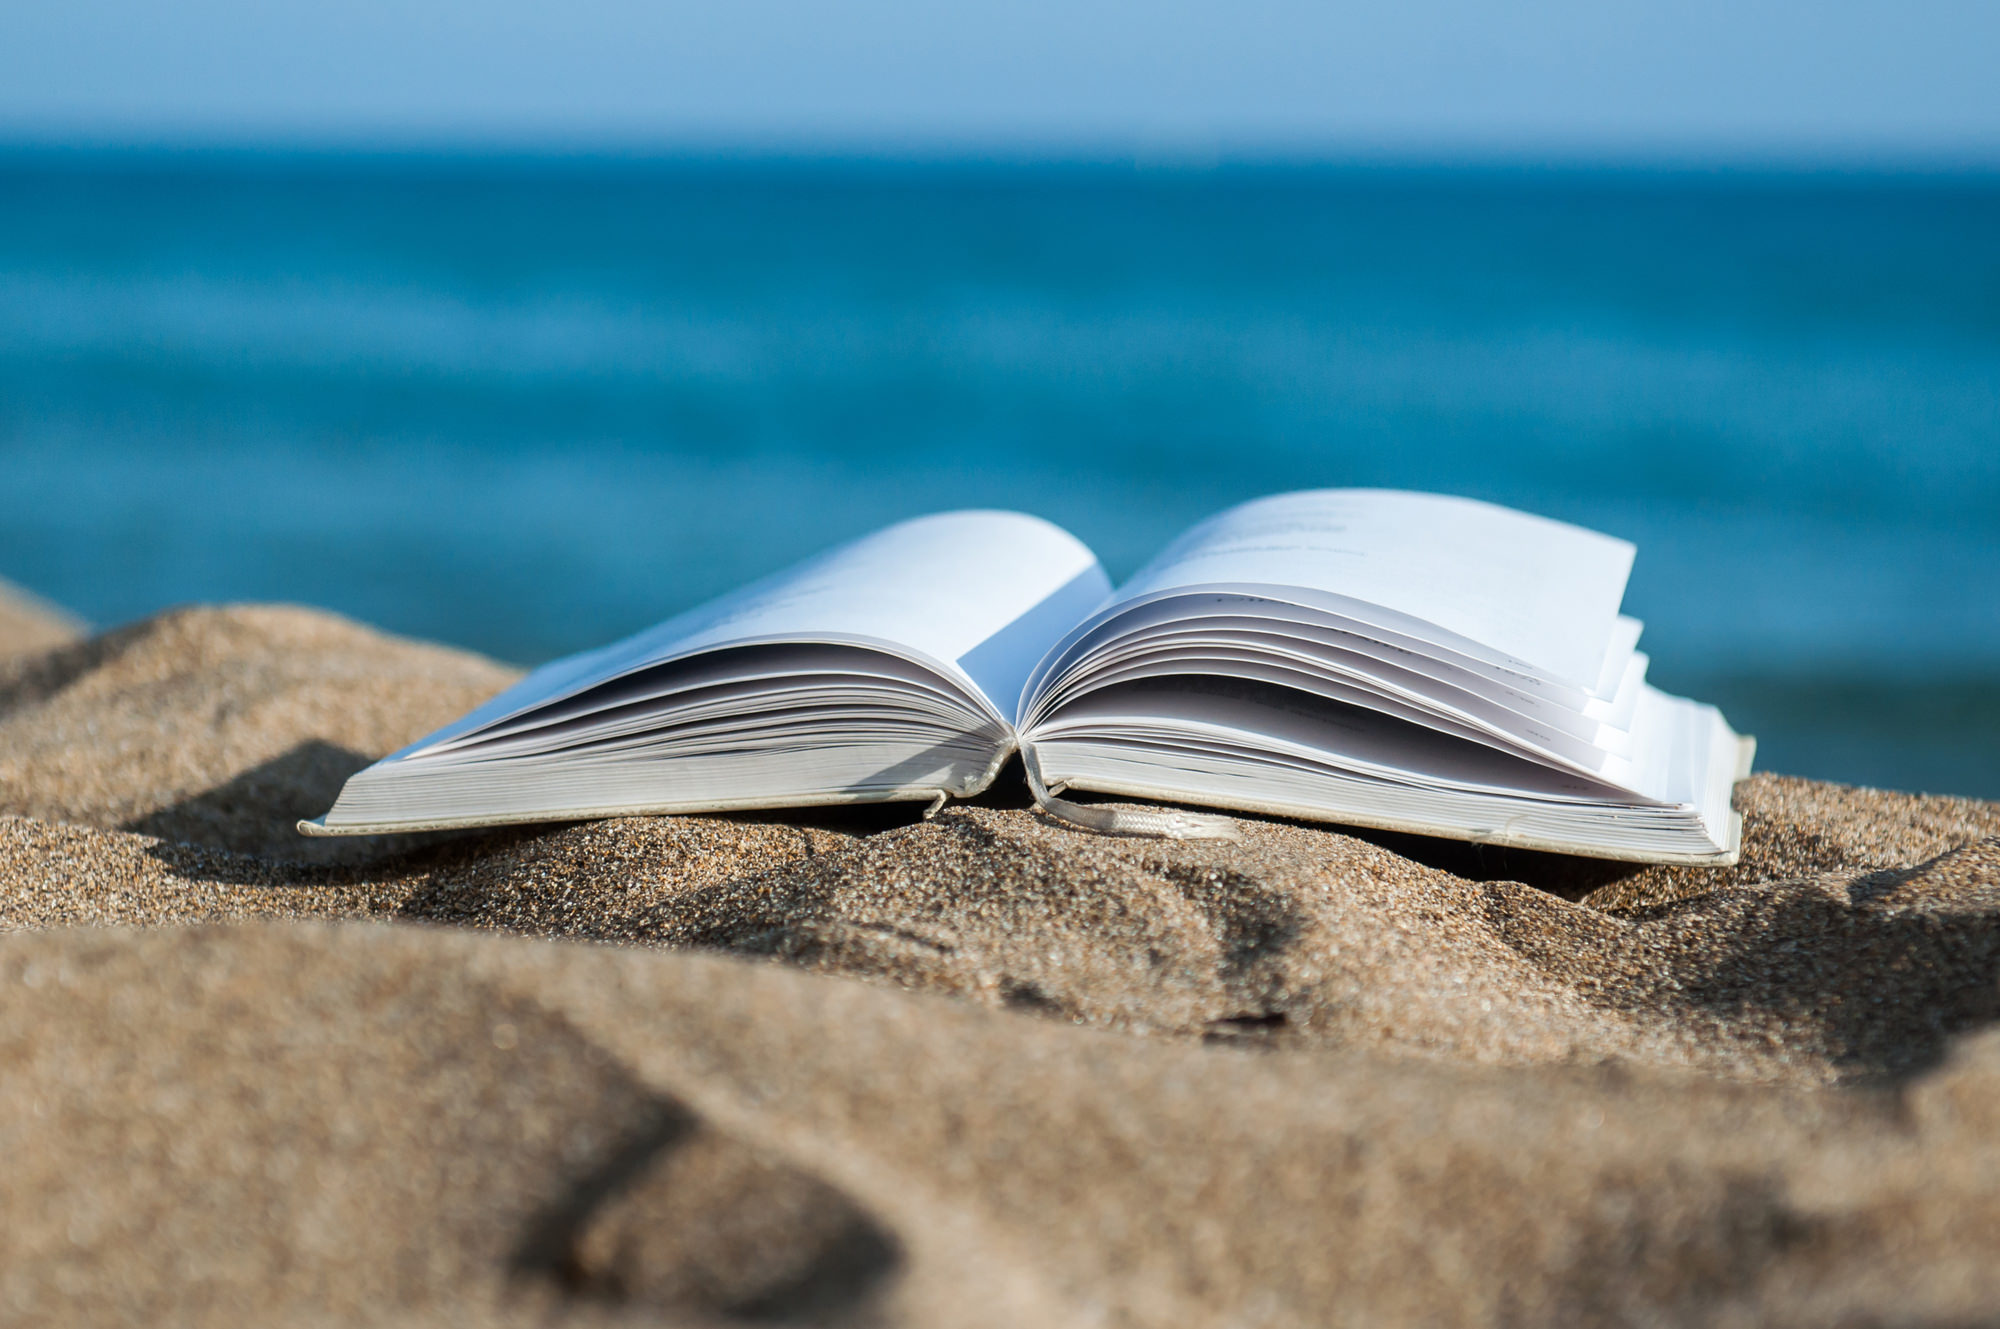 Books are in my life. Книга море. Чтение на пляже. Книга на фоне моря. Лето с книгой.